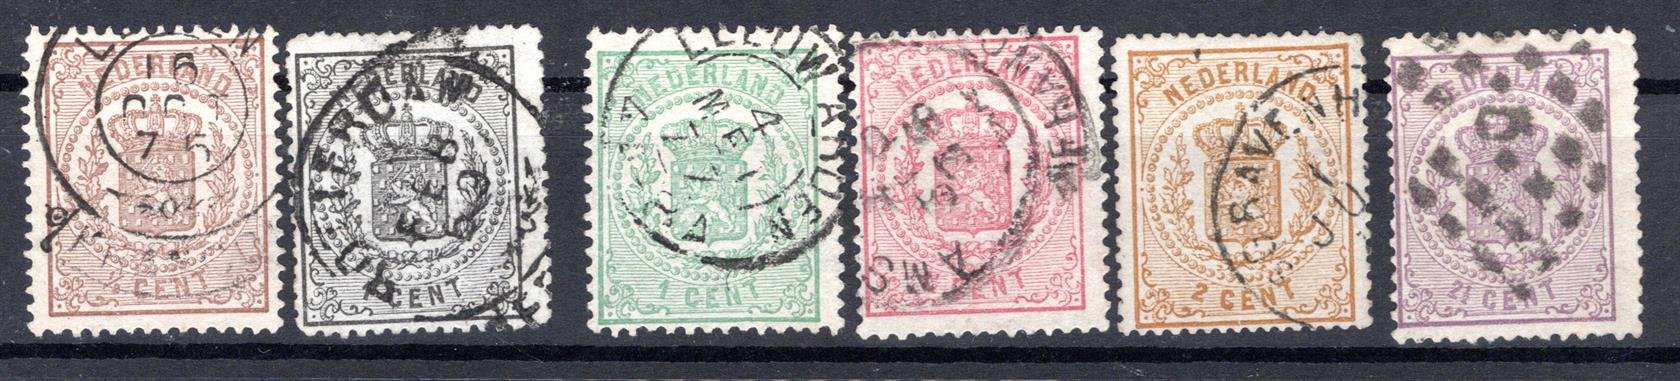 Holandsko - Mi. 13 - 18, státní znak